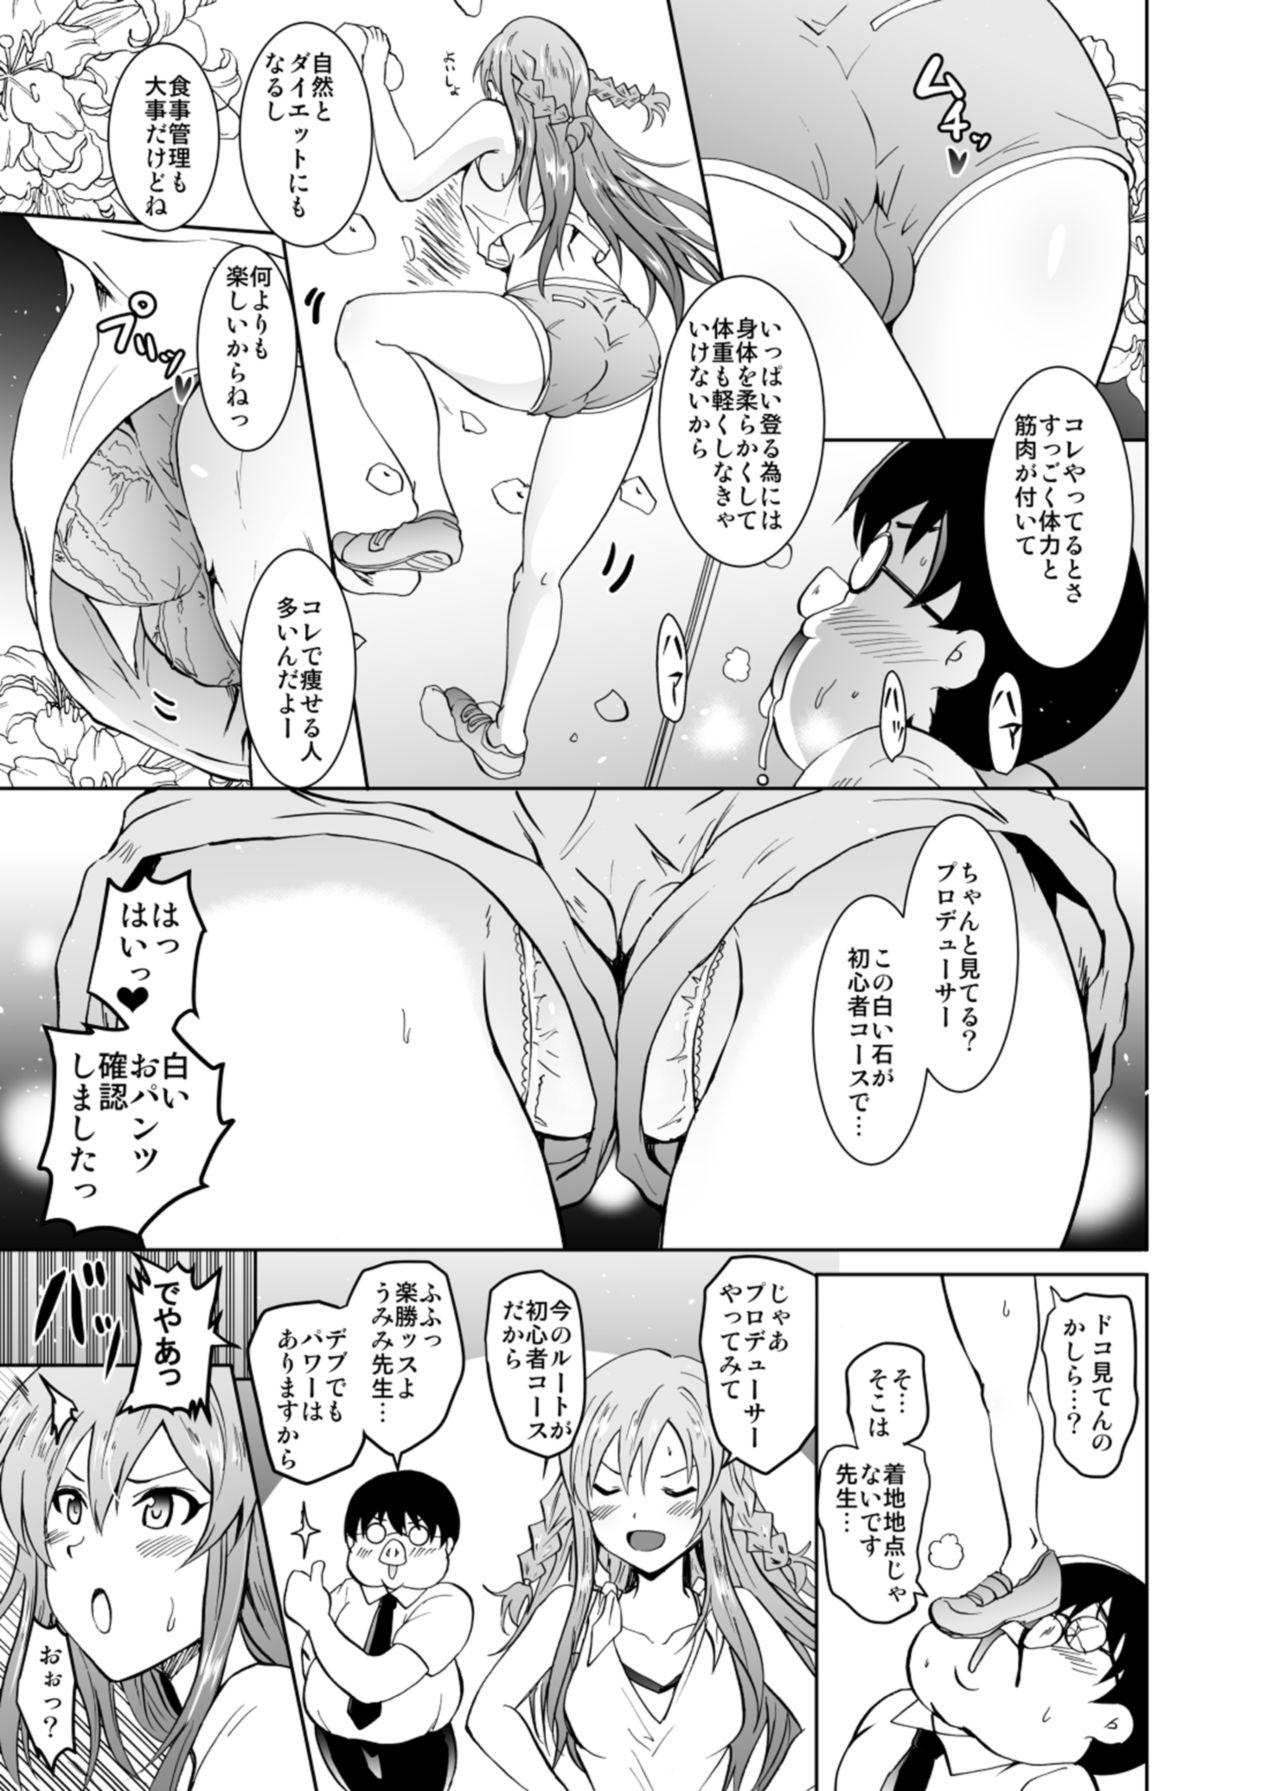 Bro UmiTra! Umimi to Issho ni Nantai Sexercise! - The idolmaster Party - Page 7